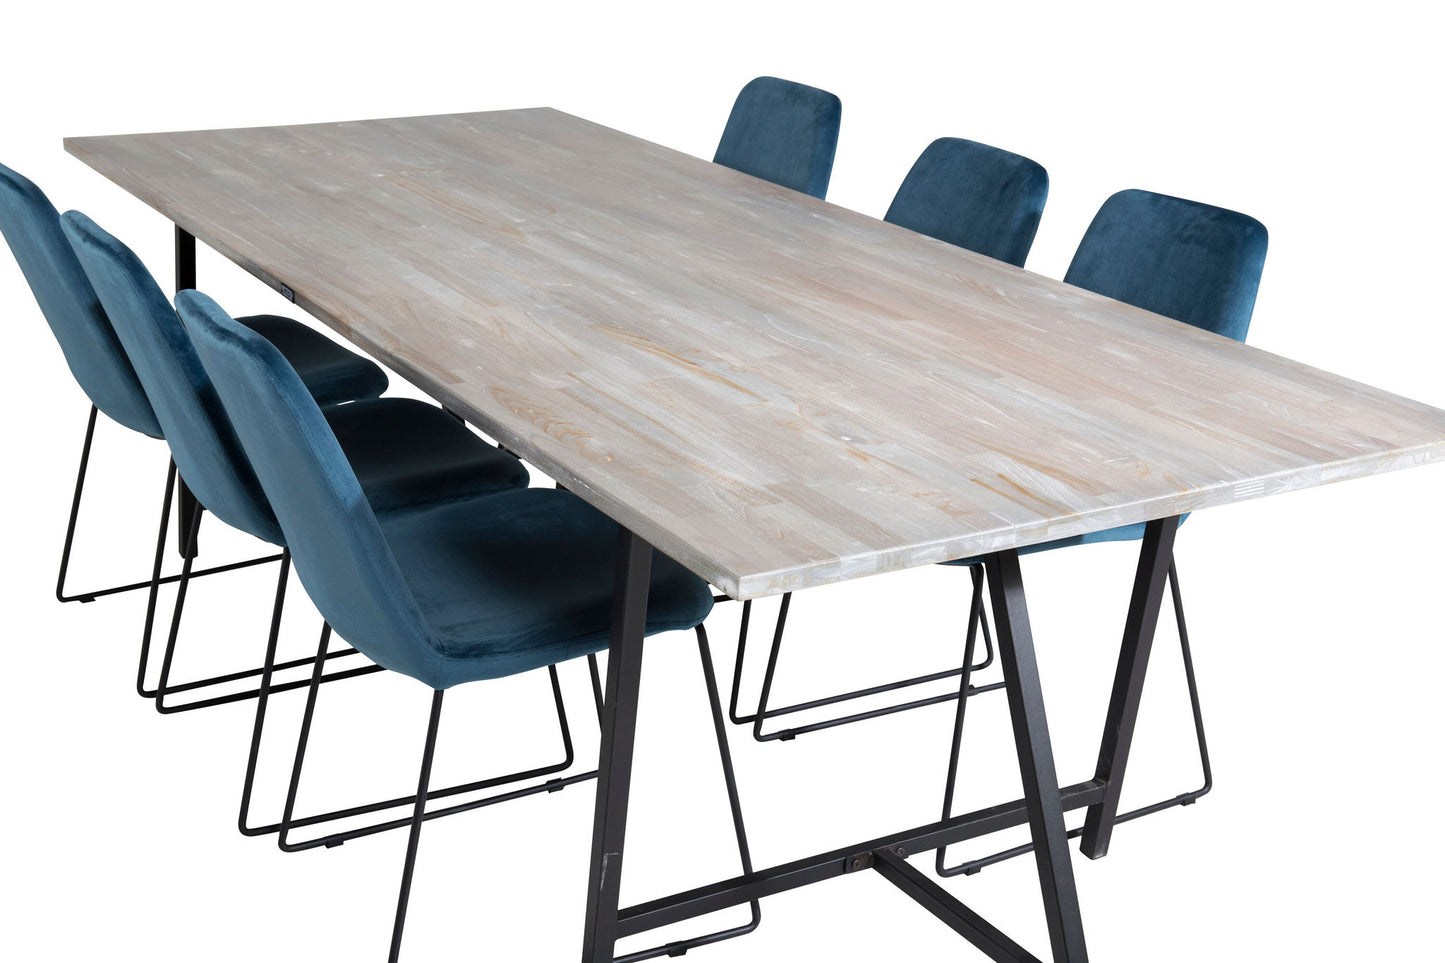 Jepara - Spisebord, 250*100*H76 - Grå /Sort+ Muce Spisebordsstol - Sorte ben - Blå velour